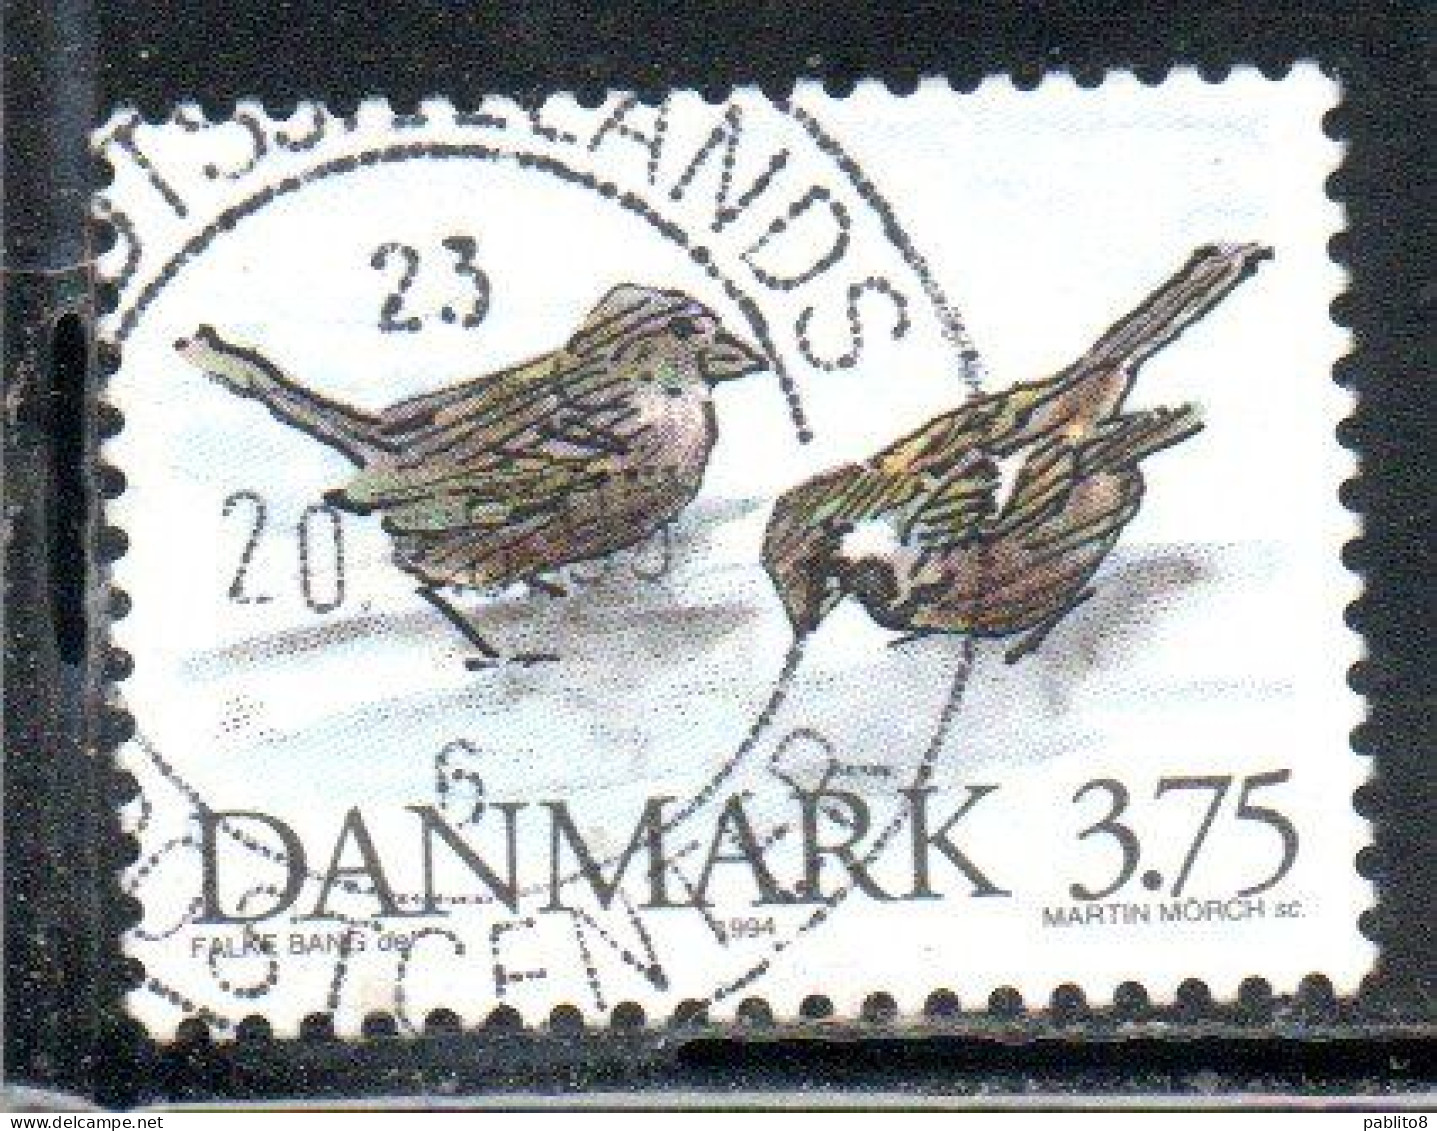 DANEMARK DANMARK DENMARK DANIMARCA 1994 WILD FAUNA ANIMALS BIRDS HOUSE SPARROWS 3.75k USED USATO OBLITERE' - Used Stamps